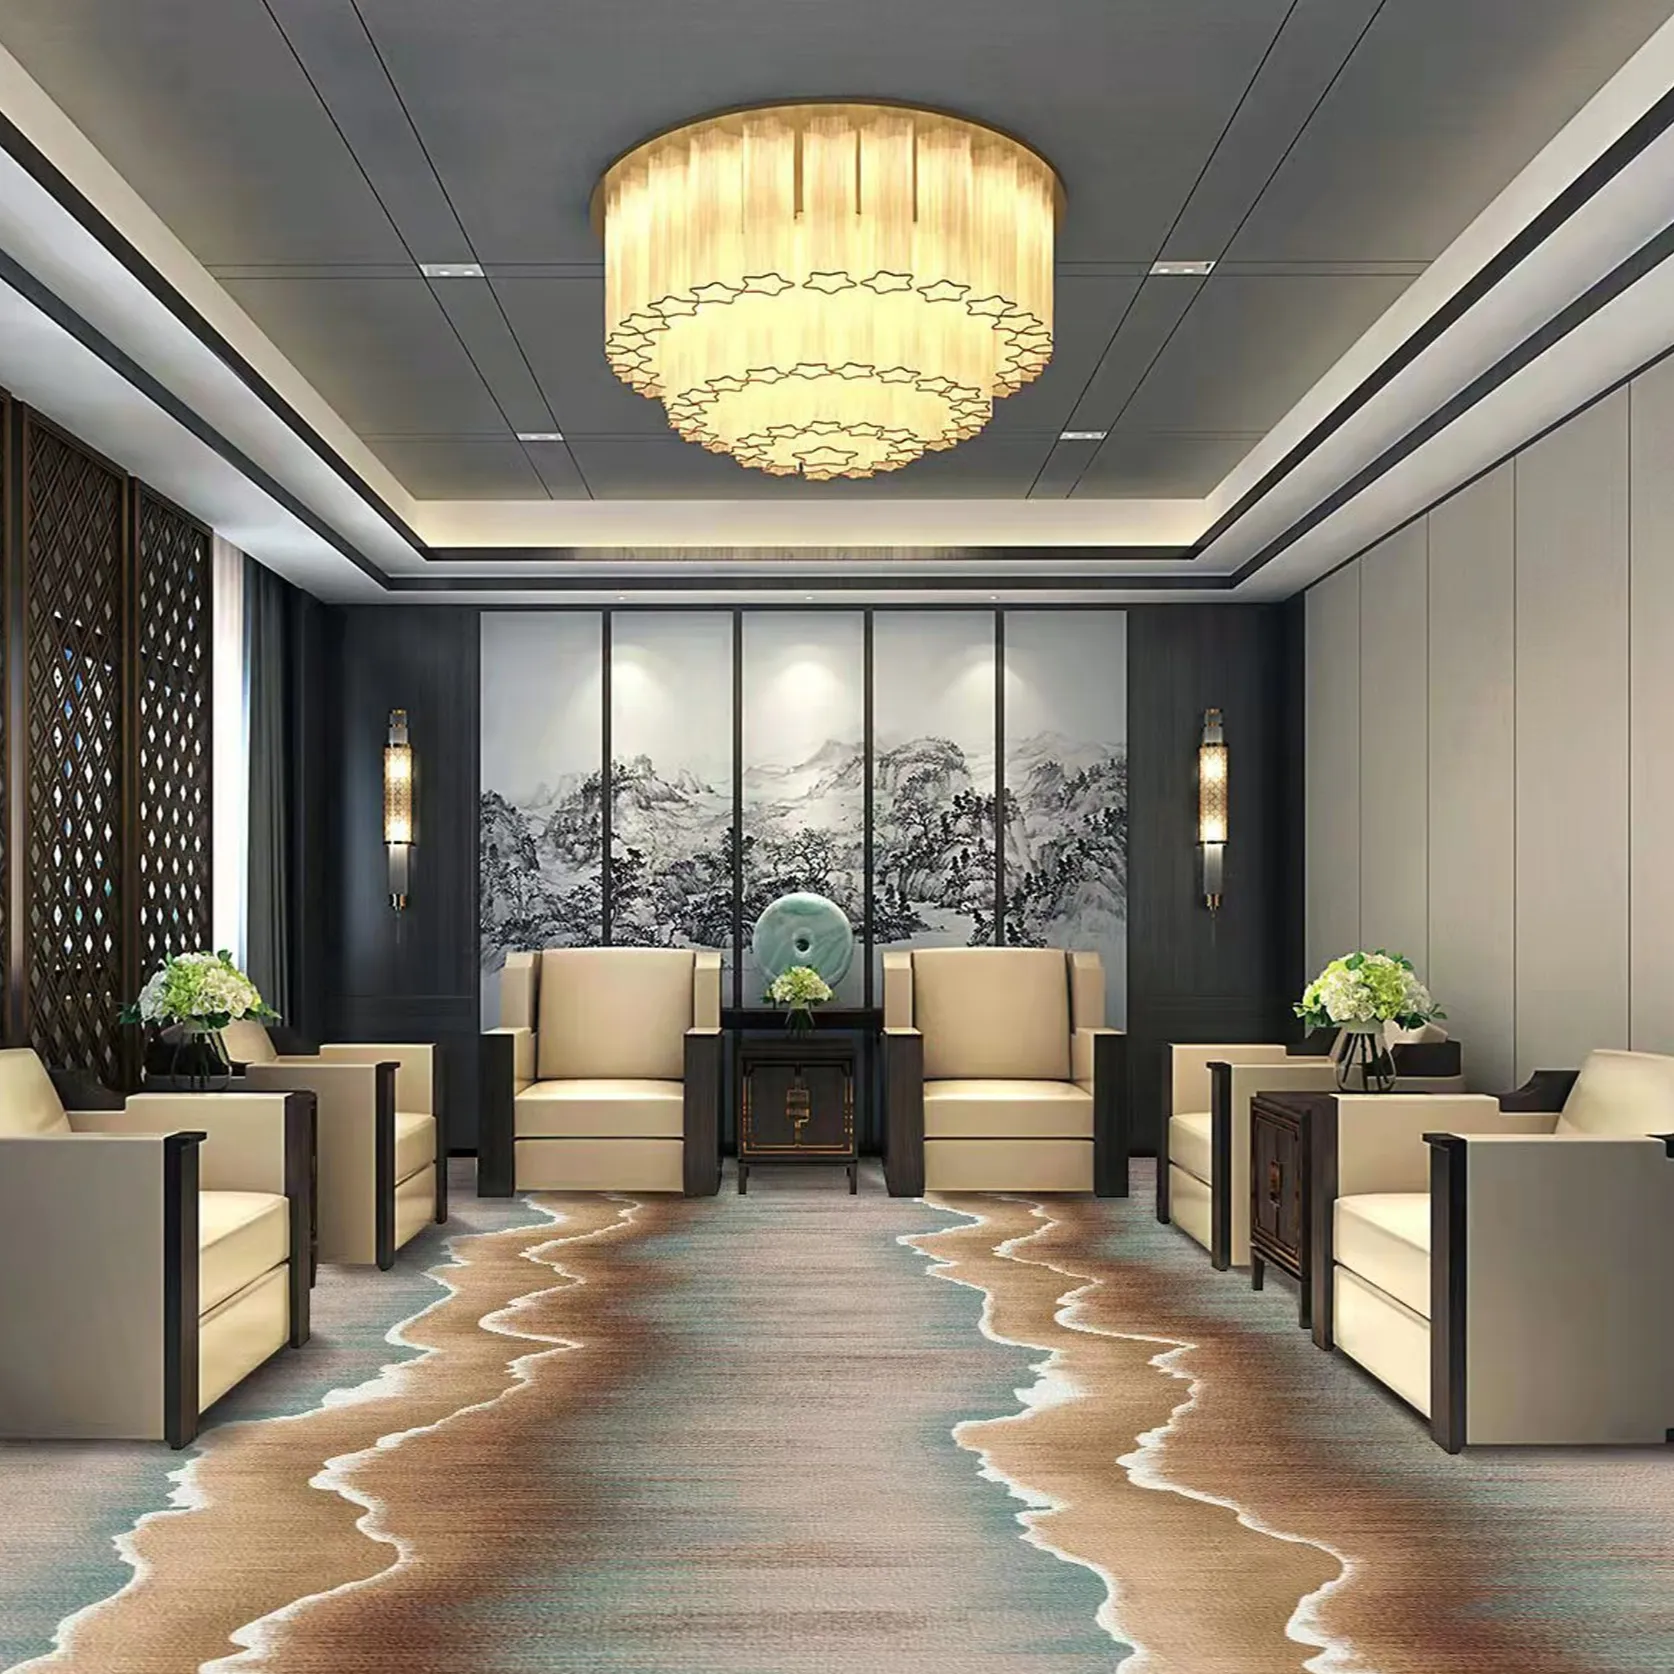 3D dicetak Hotel mencetak dinding karpet ke dinding Hotel karpet kamar untuk lorong perjamuan